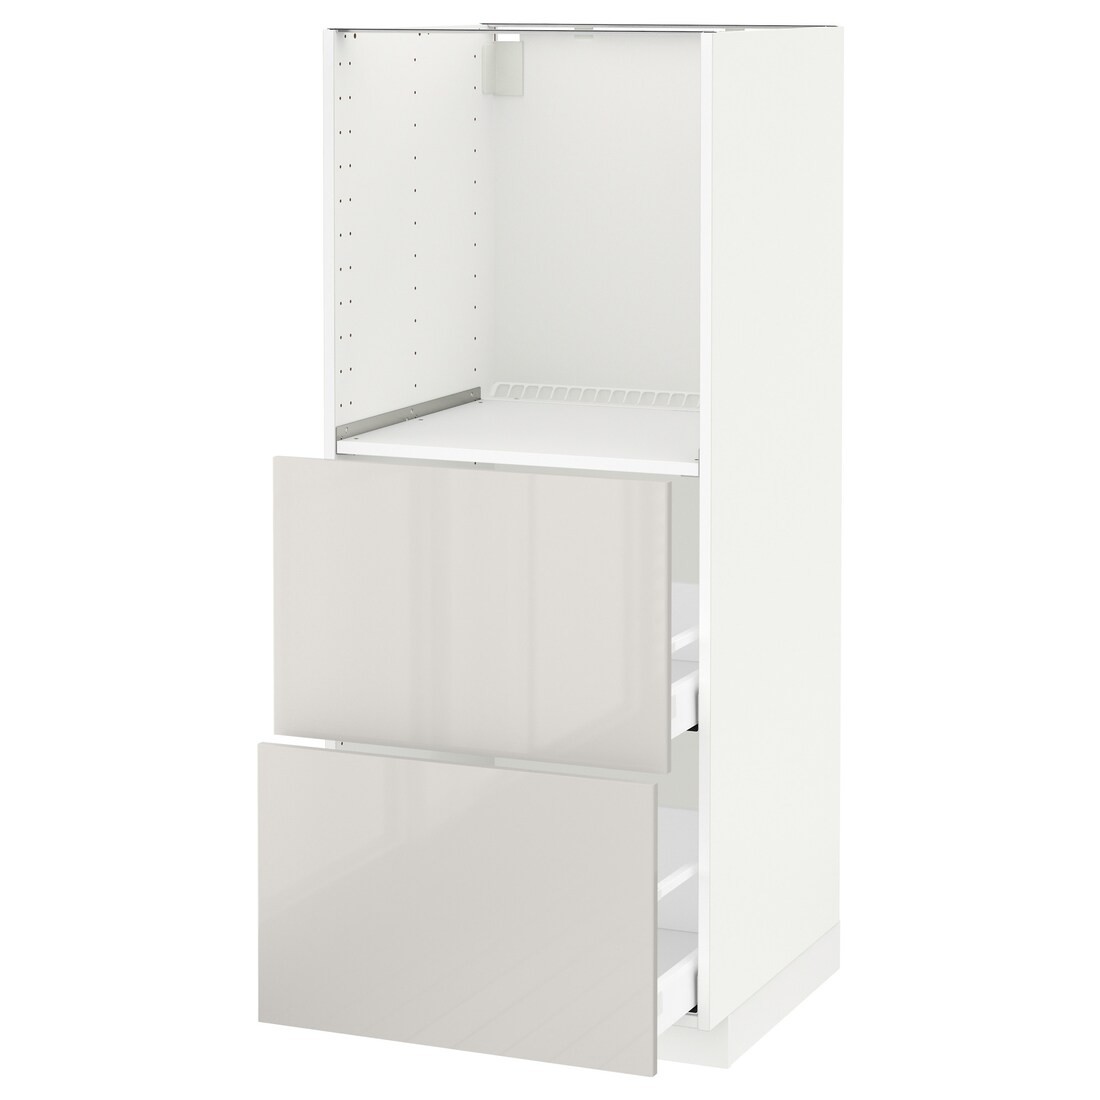 METOD МЕТОД / MAXIMERA МАКСИМЕРА Высокий шкаф с 2 ящиками для духовки, белый / Ringhult светло-серый, 60x60x140 см